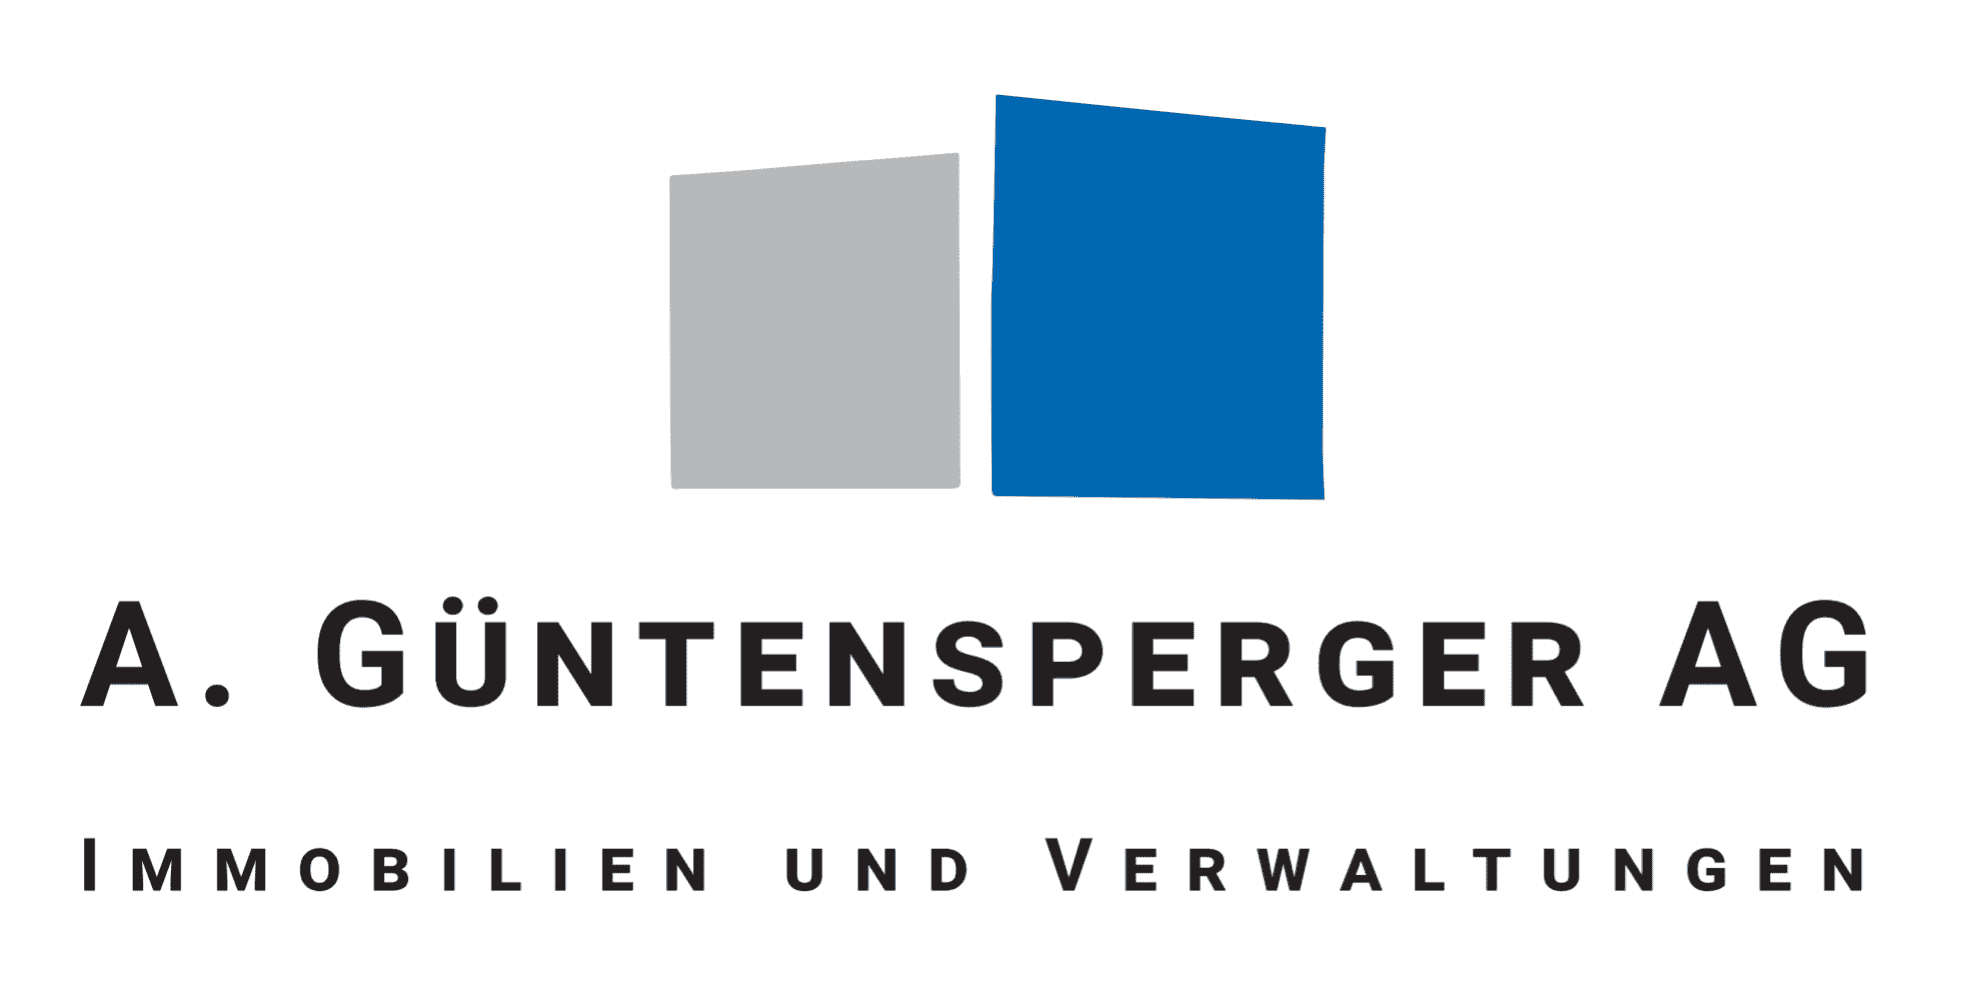 A. Güntensperger AG